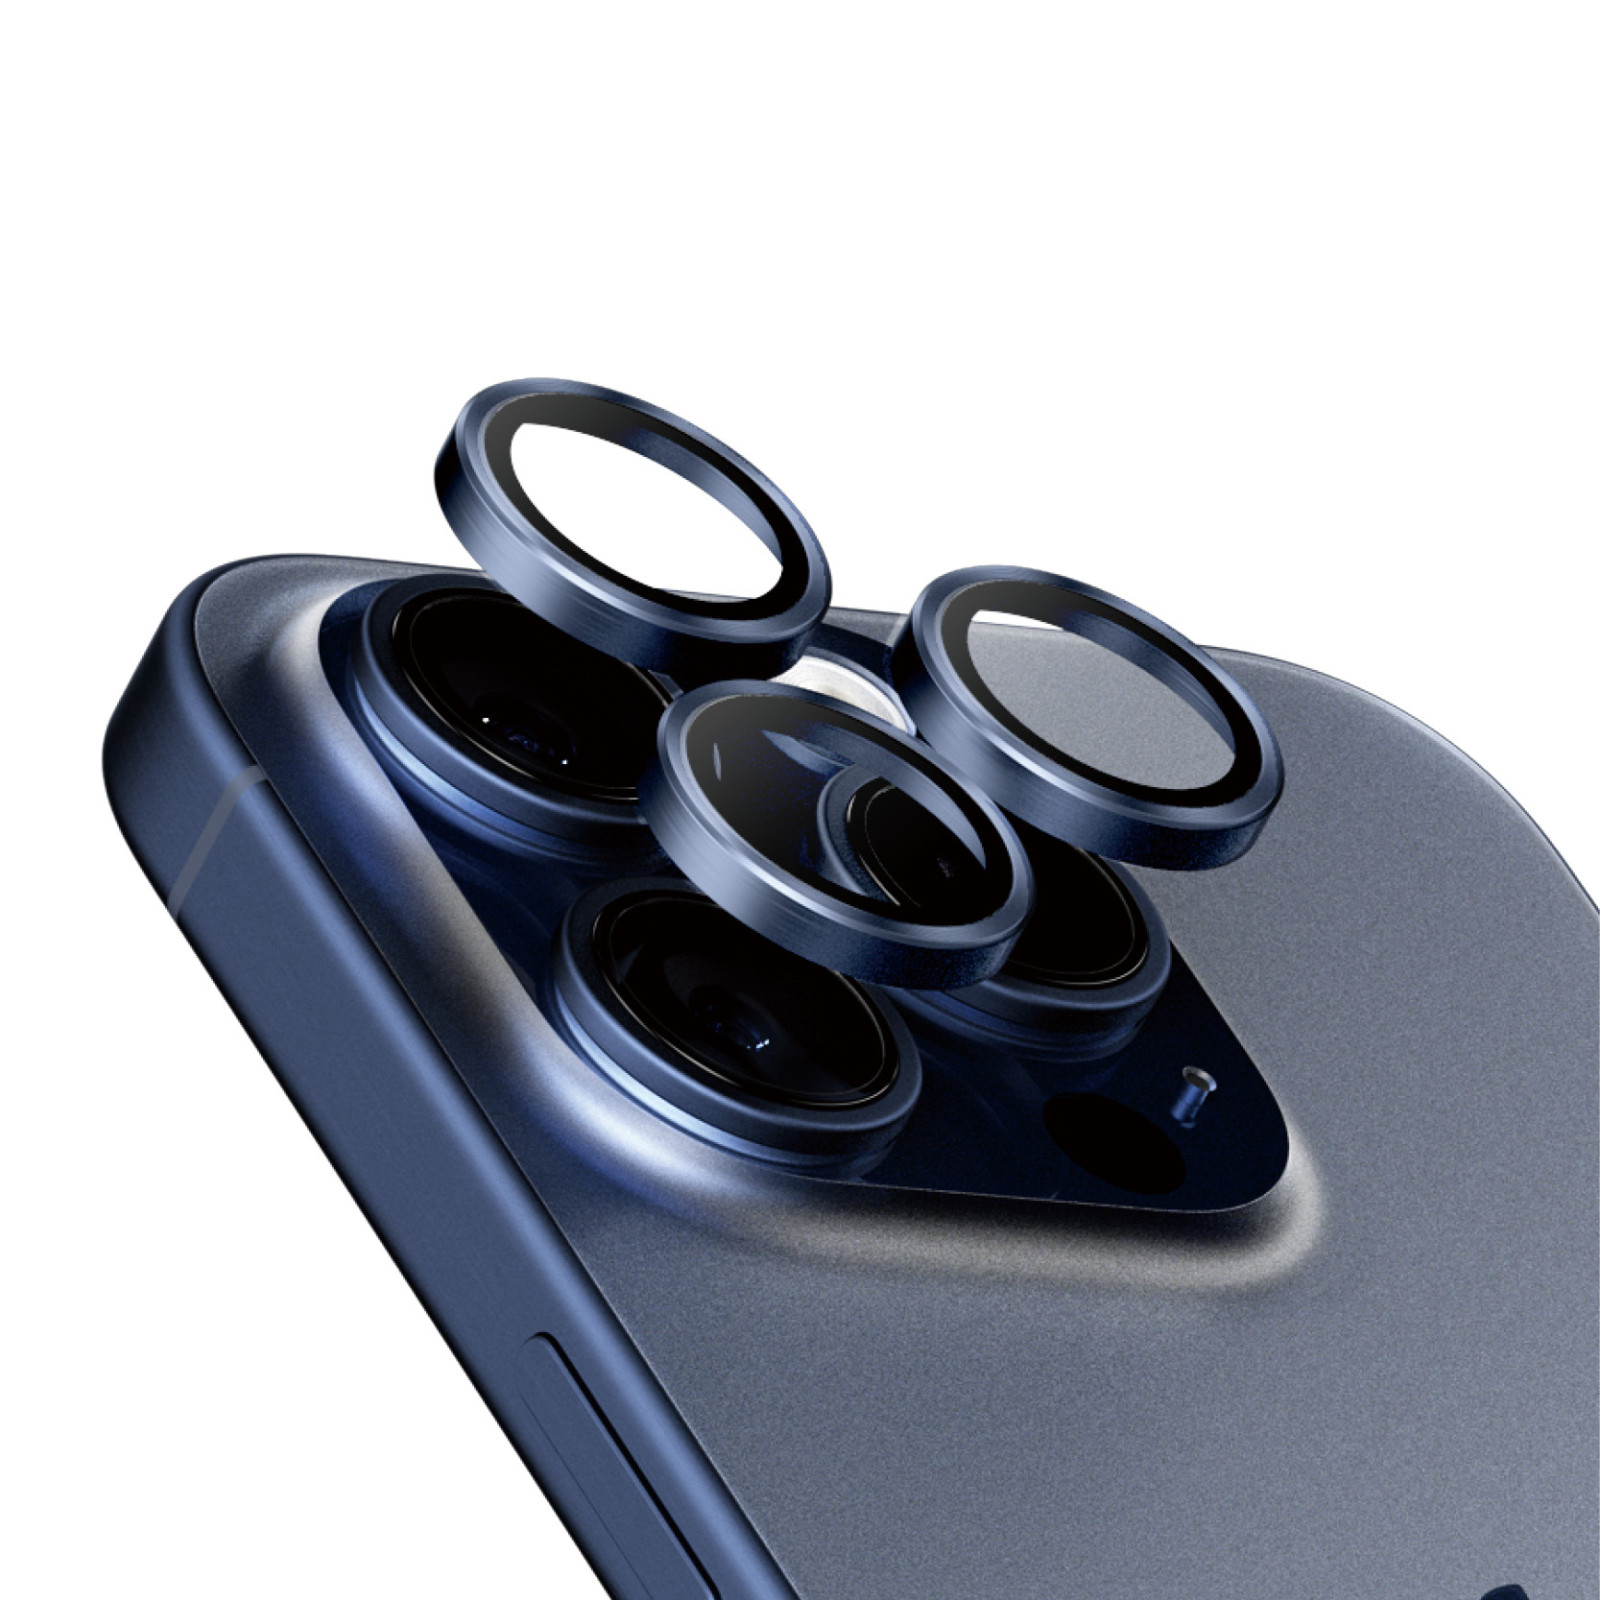 Стъклен протектор за камера PanzerGlass за Apple iPhone 15 Pro, 15 Pro Max, Hoops, PicturePerfect, Rings, Син